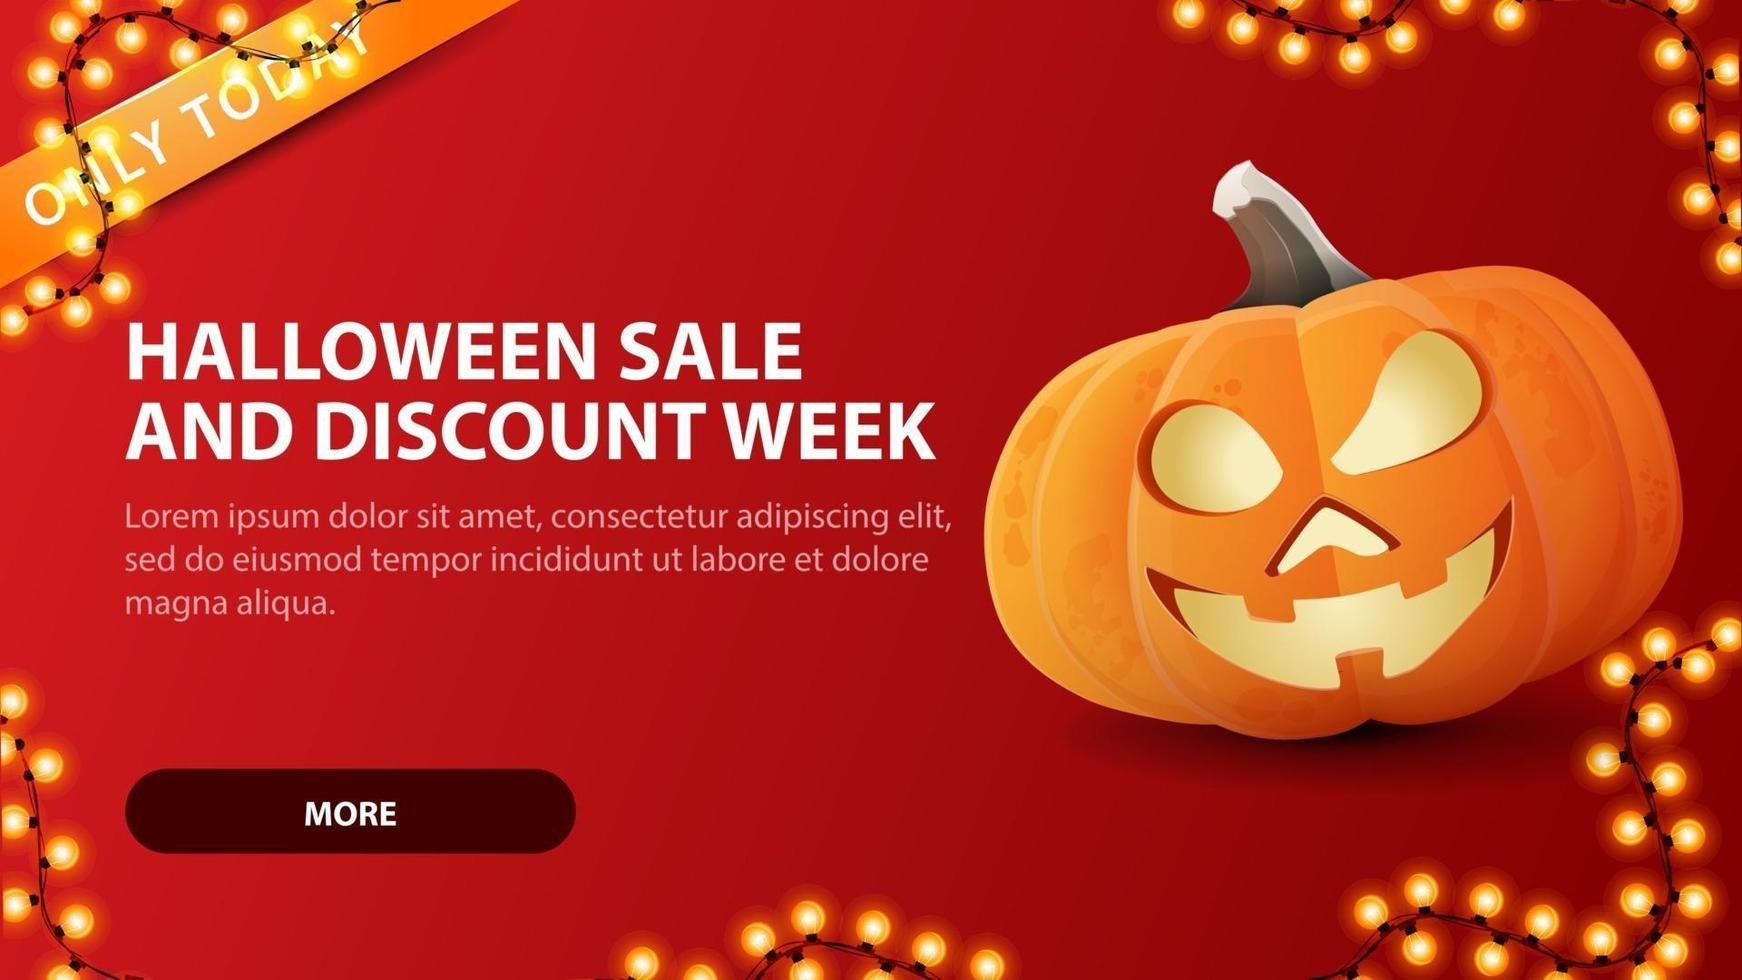 Venda de halloween e semana de desconto, banner web de desconto horizontal vermelho com divertido jack de abóbora. vetor